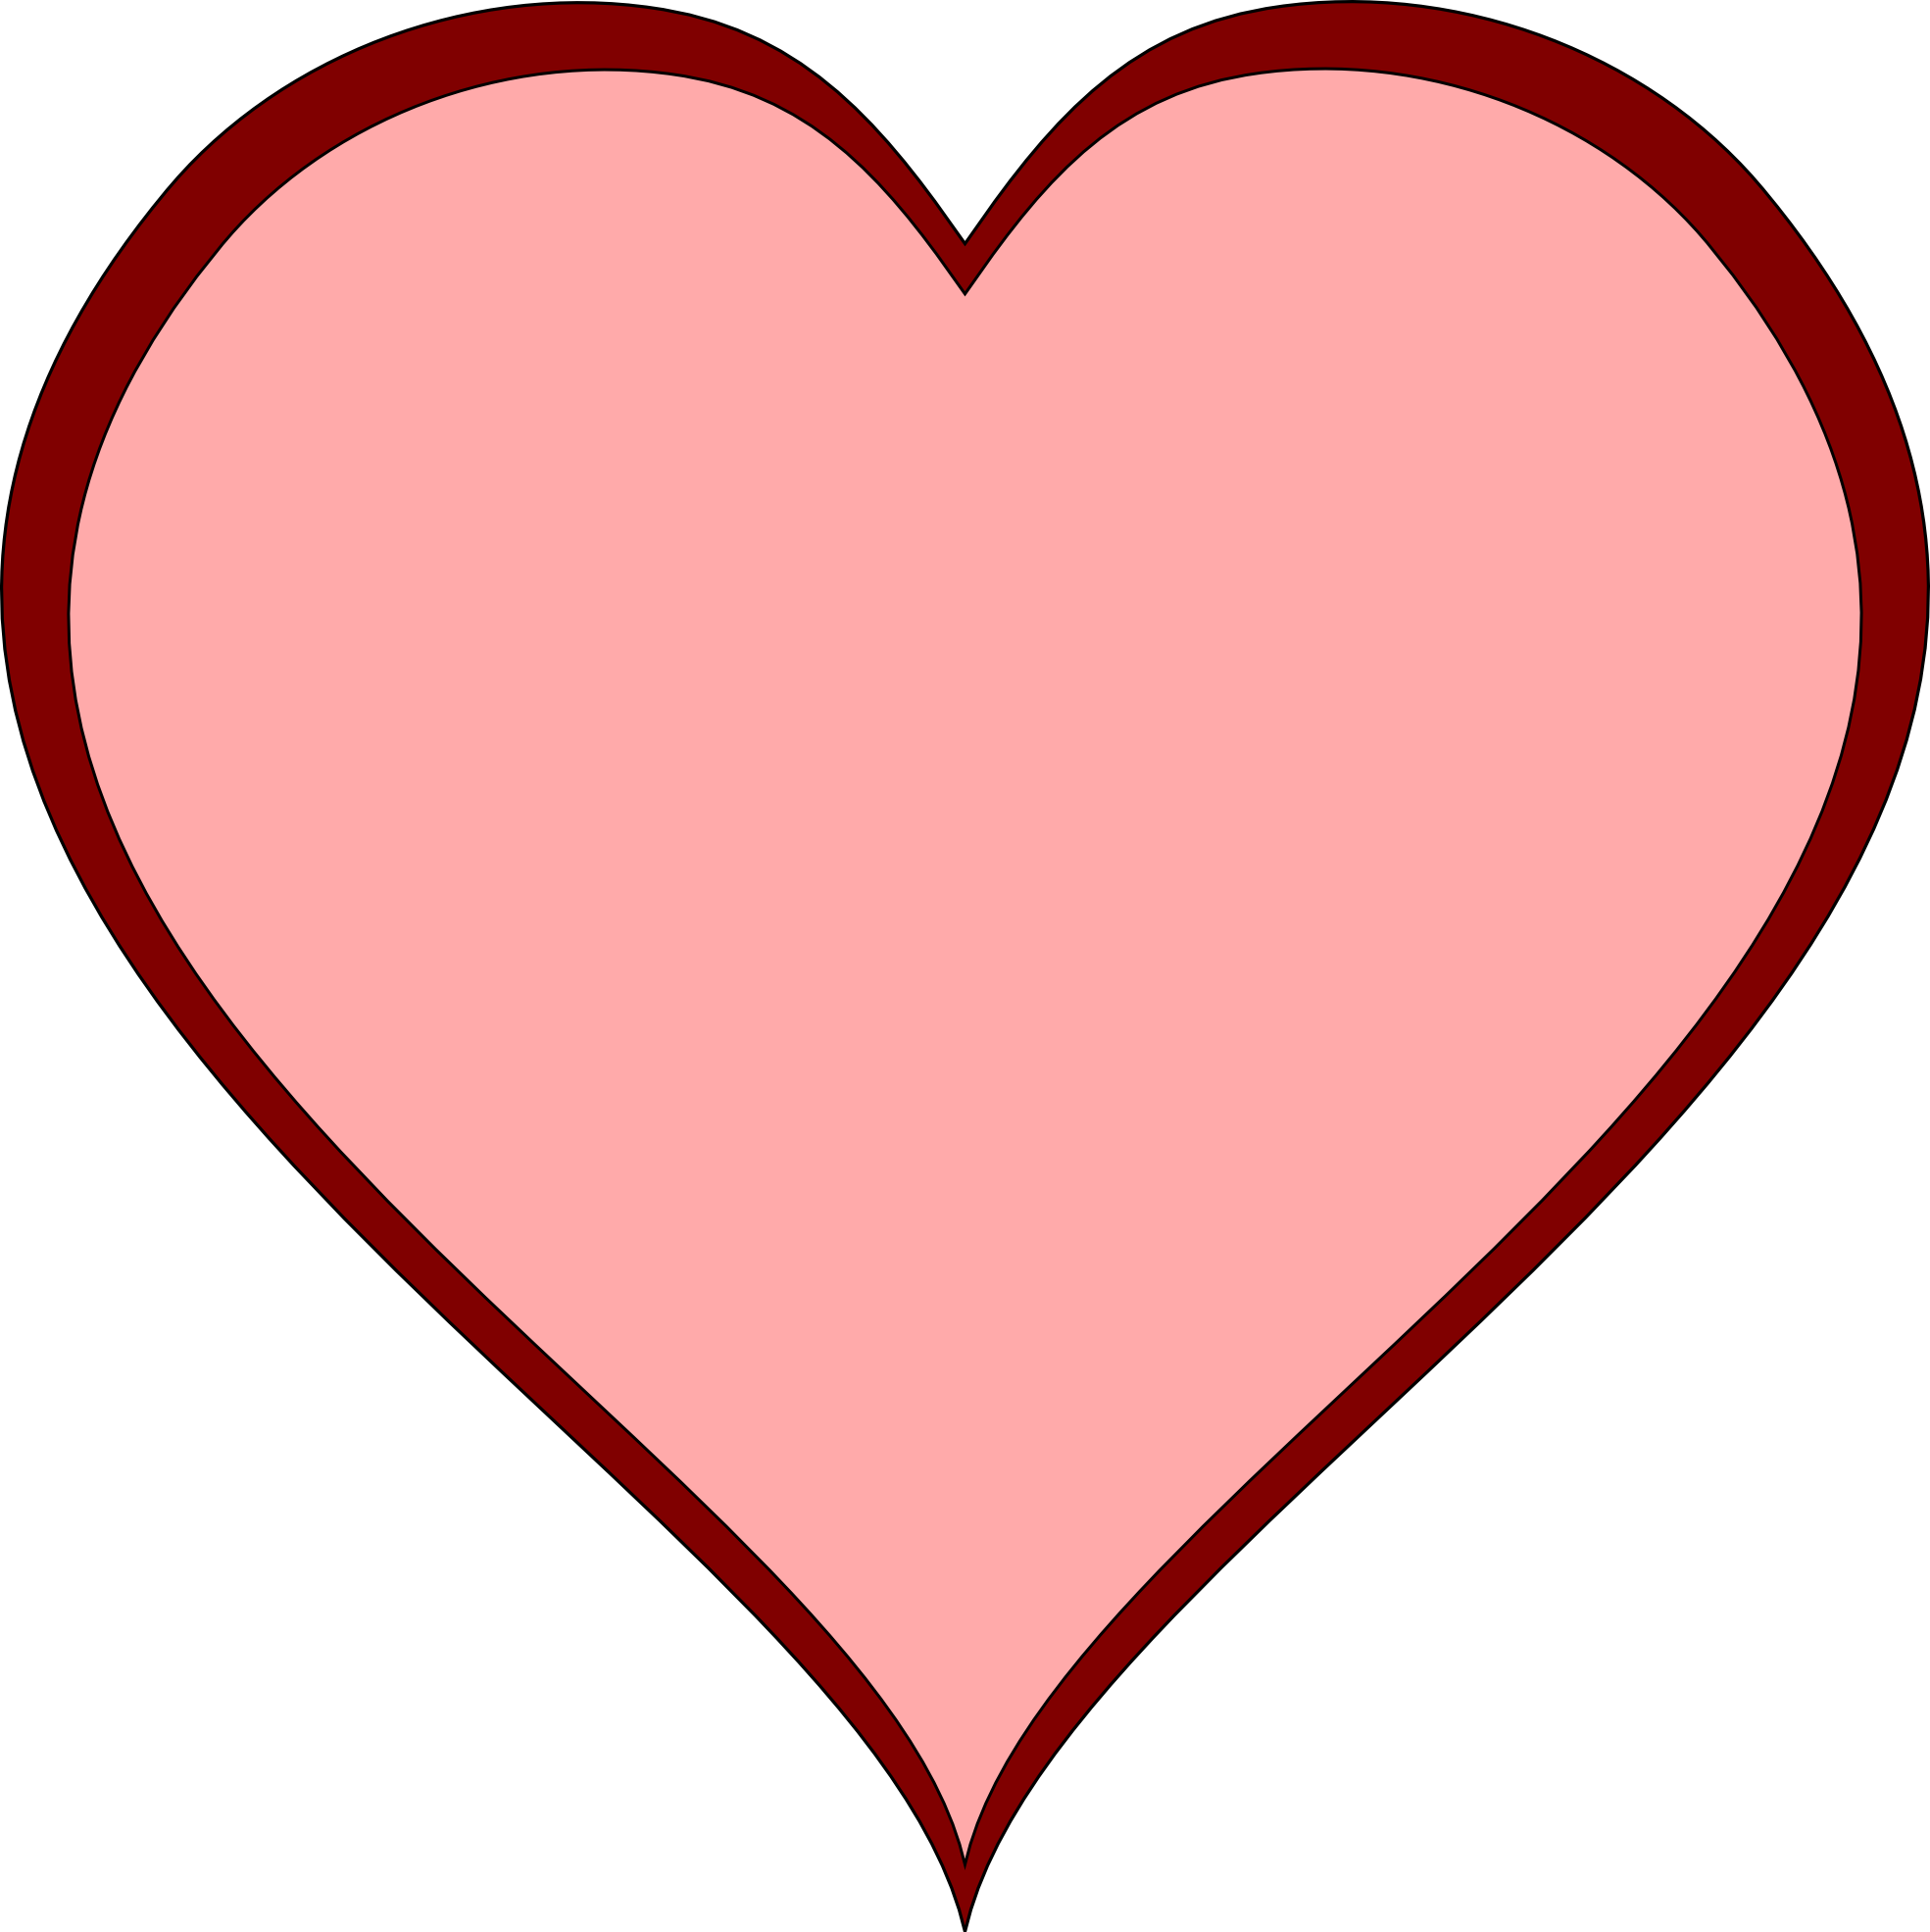 transparent heart illustrator download